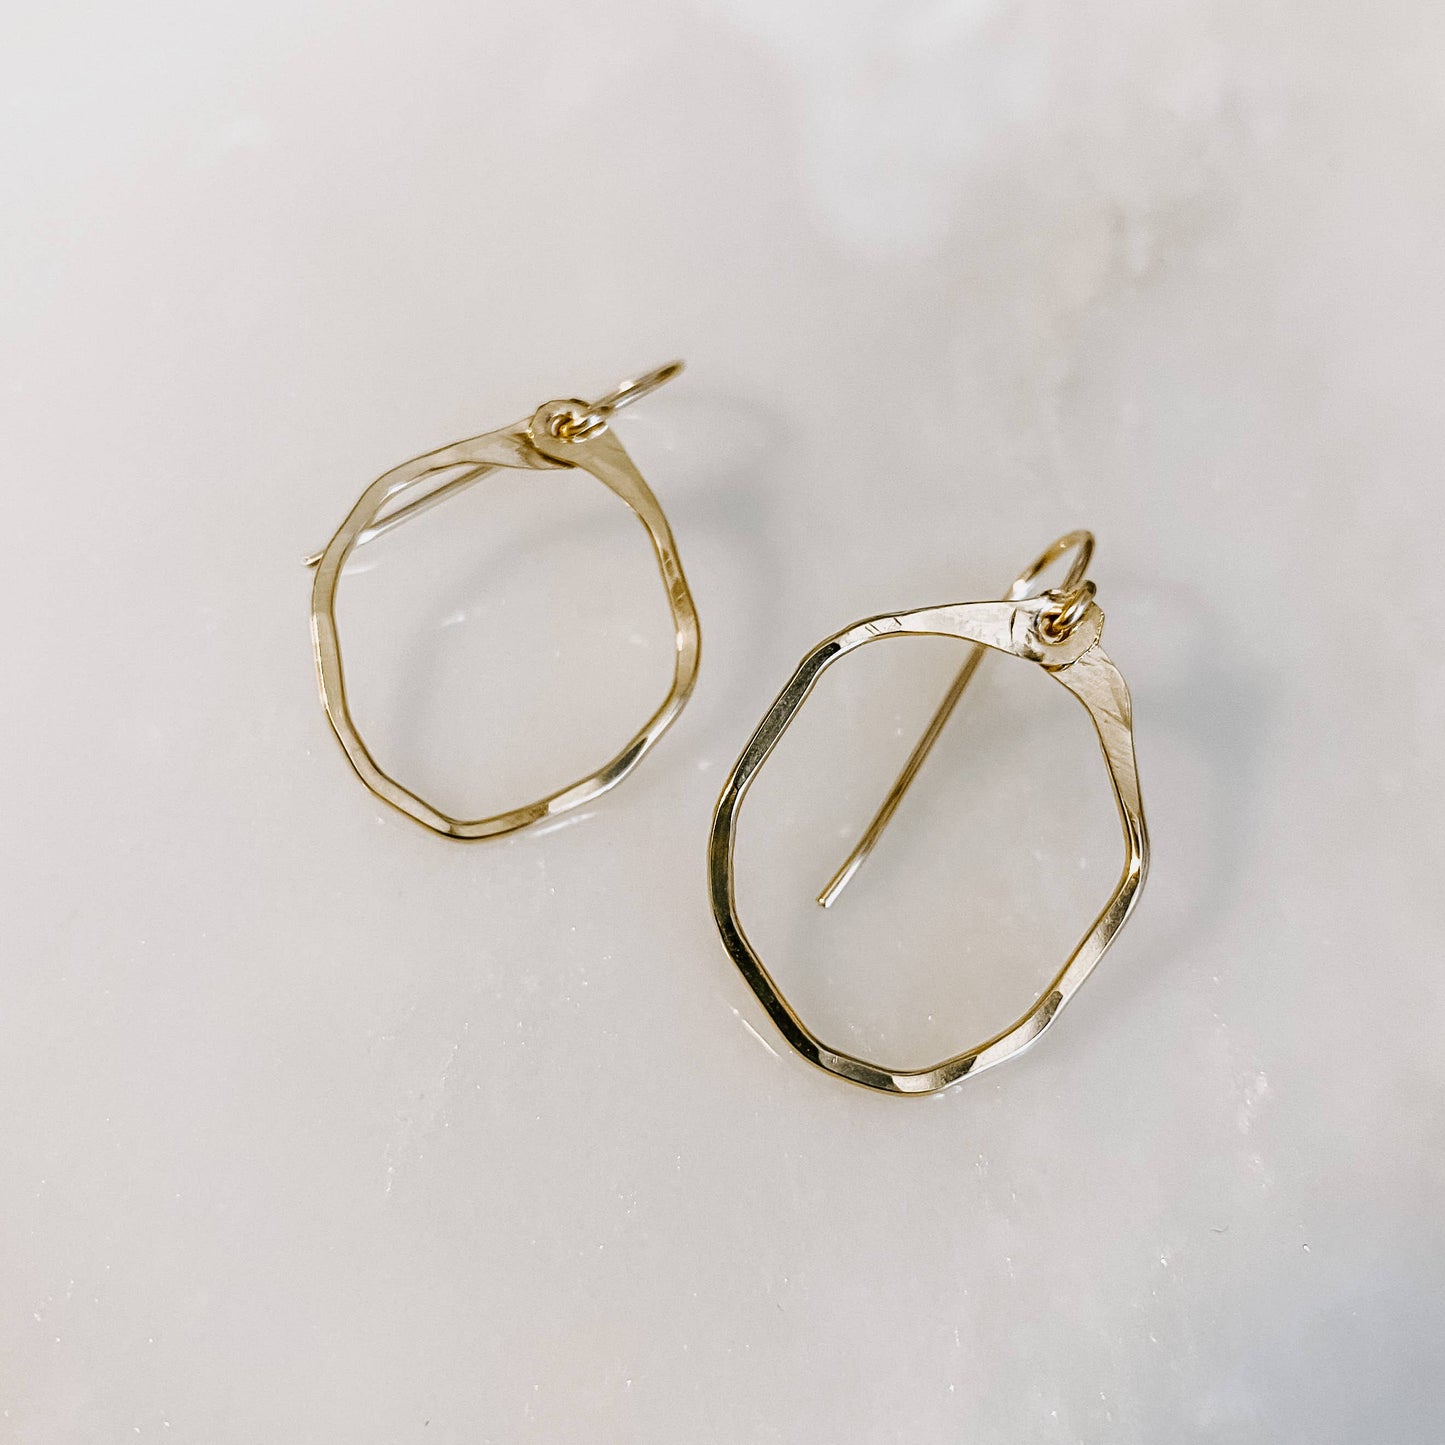 Mini Hoop Earrings: 14k Gold Fill